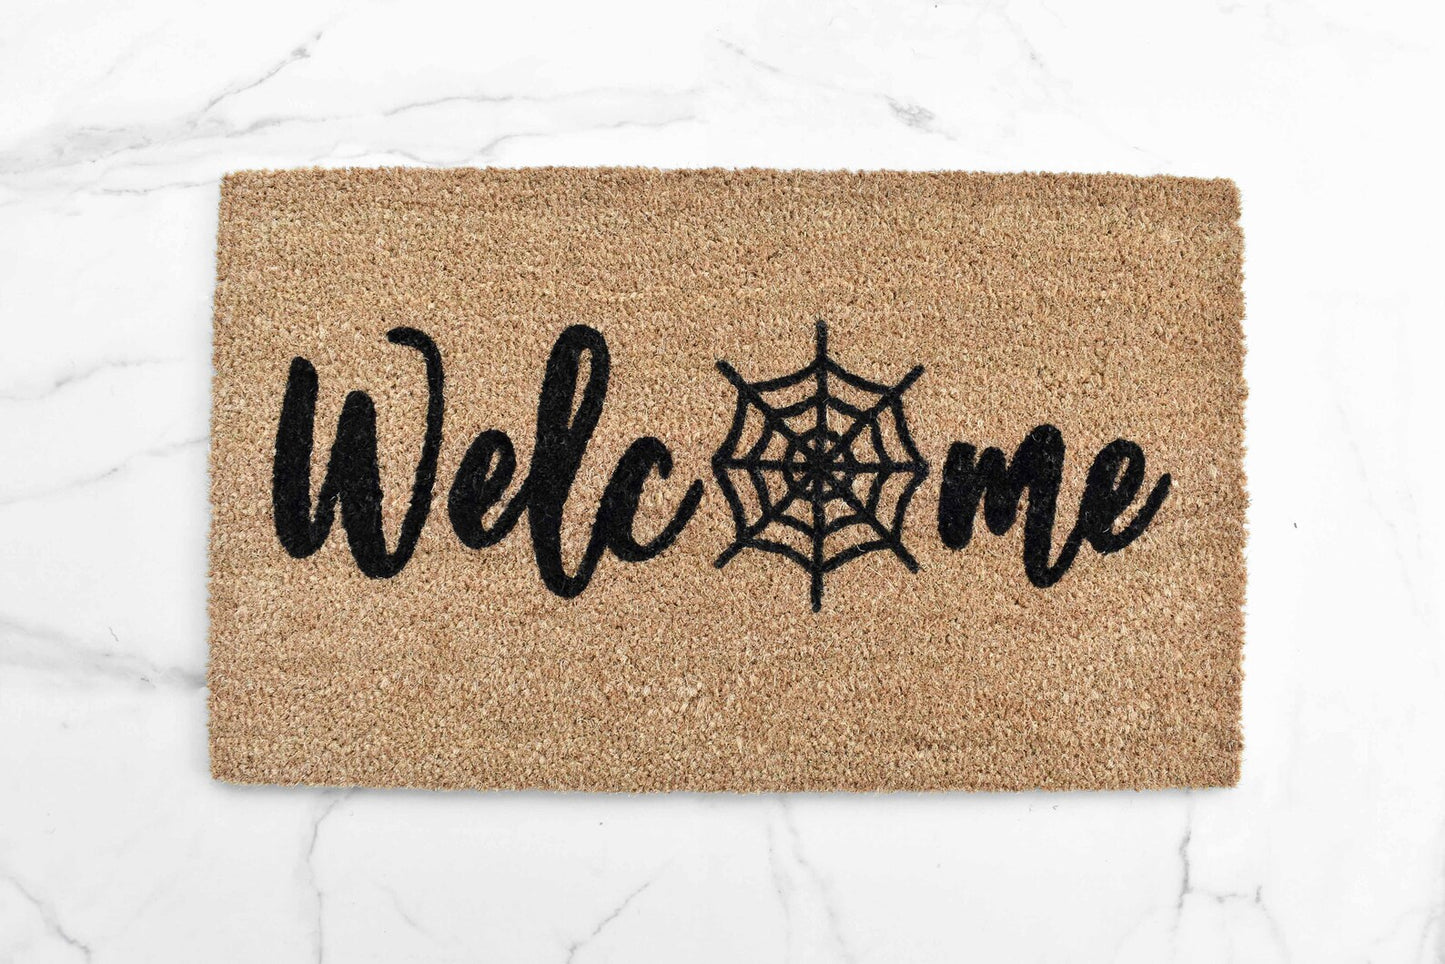 Welcome + Spider Web Doormat